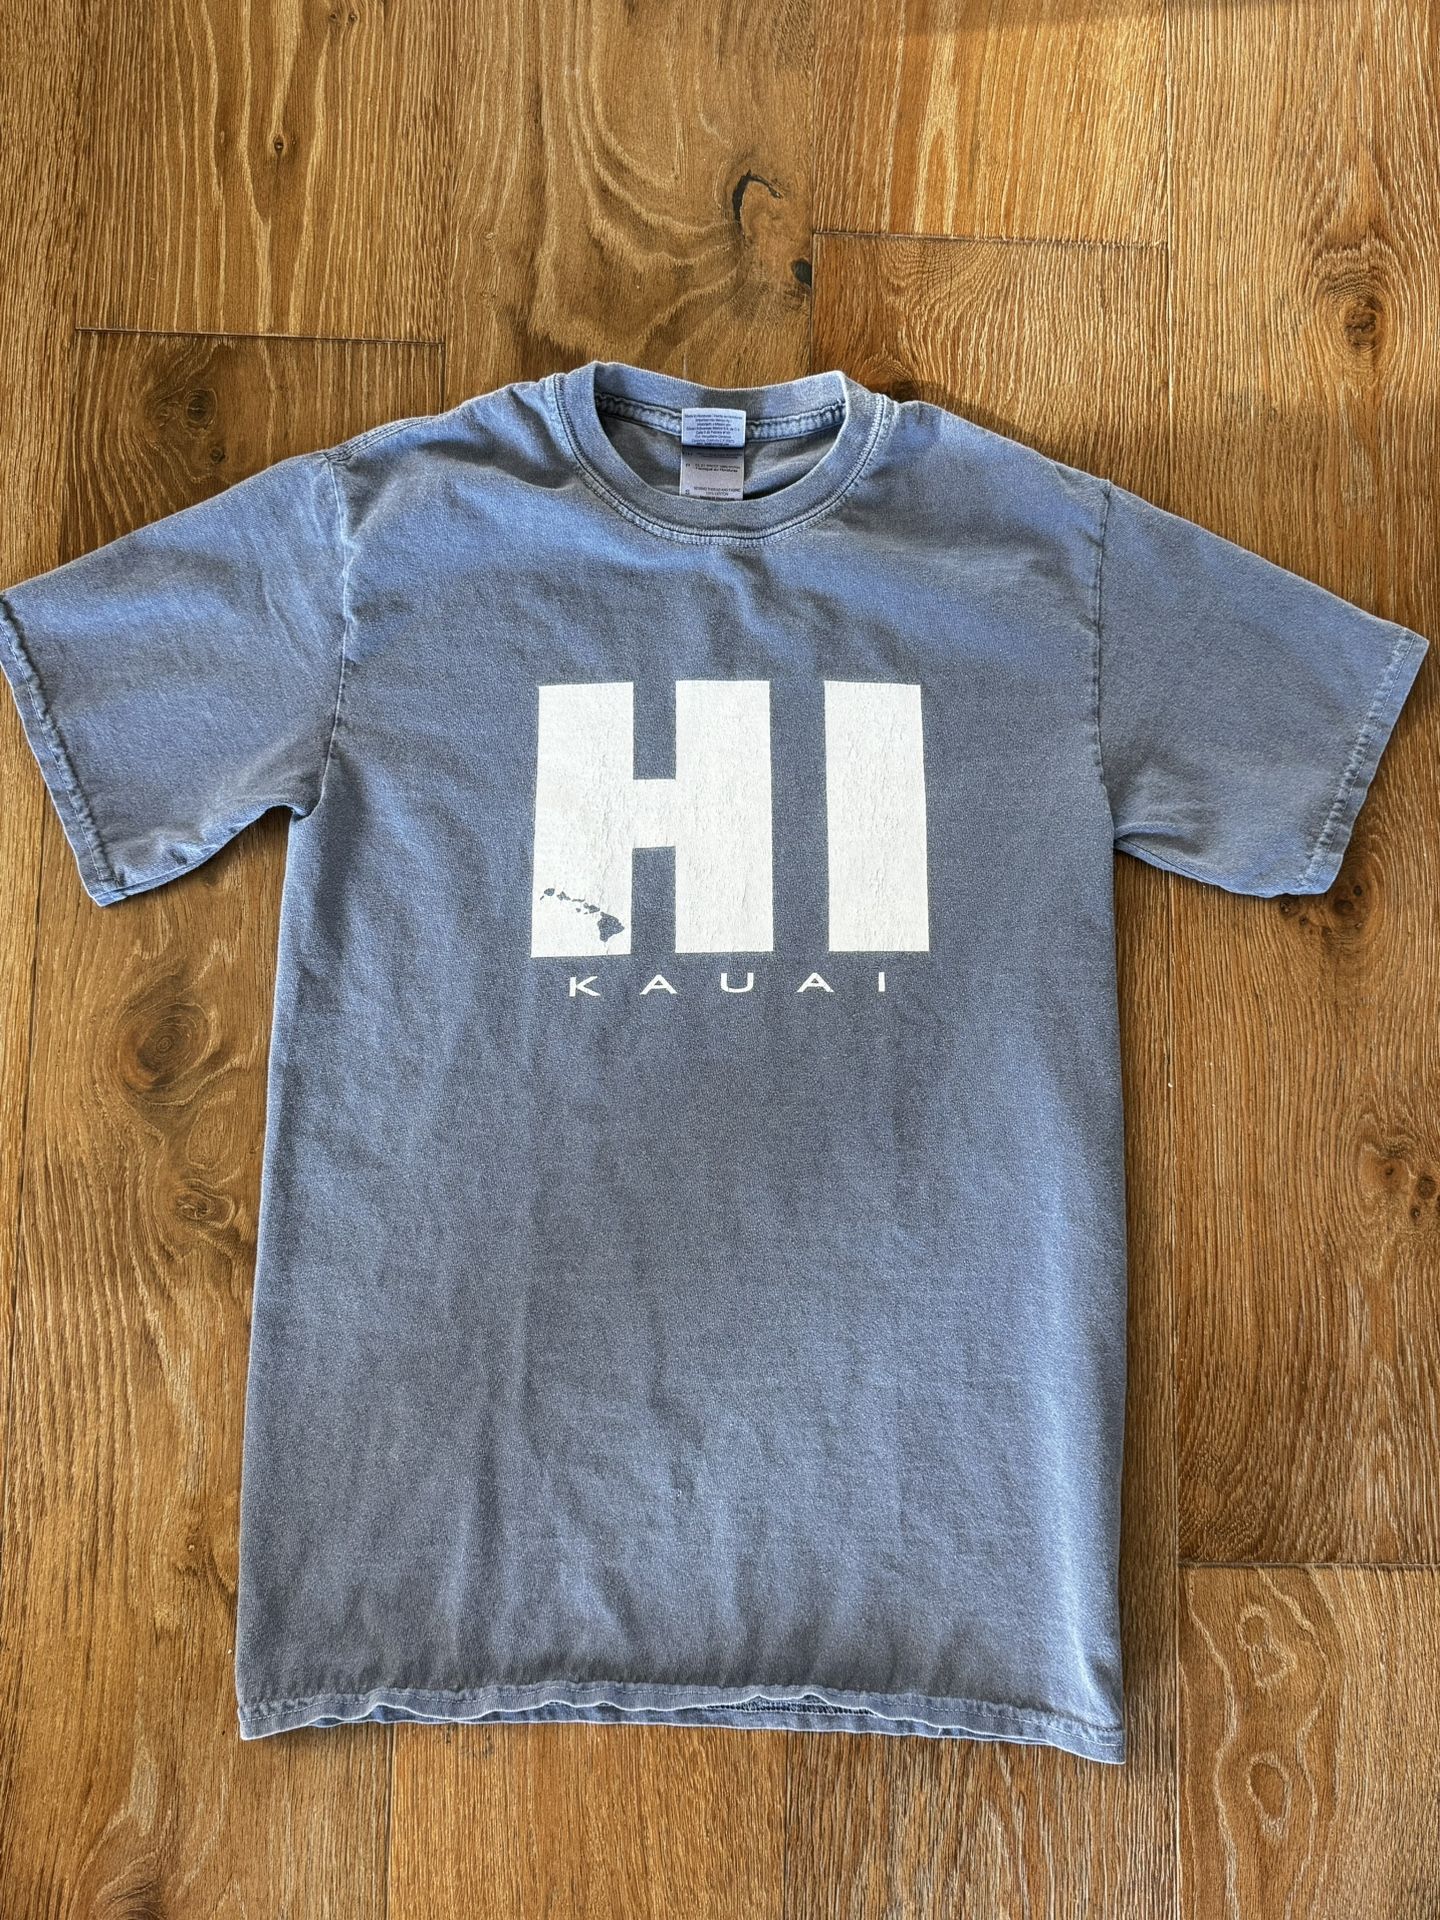 Kauai, HI T- shirt